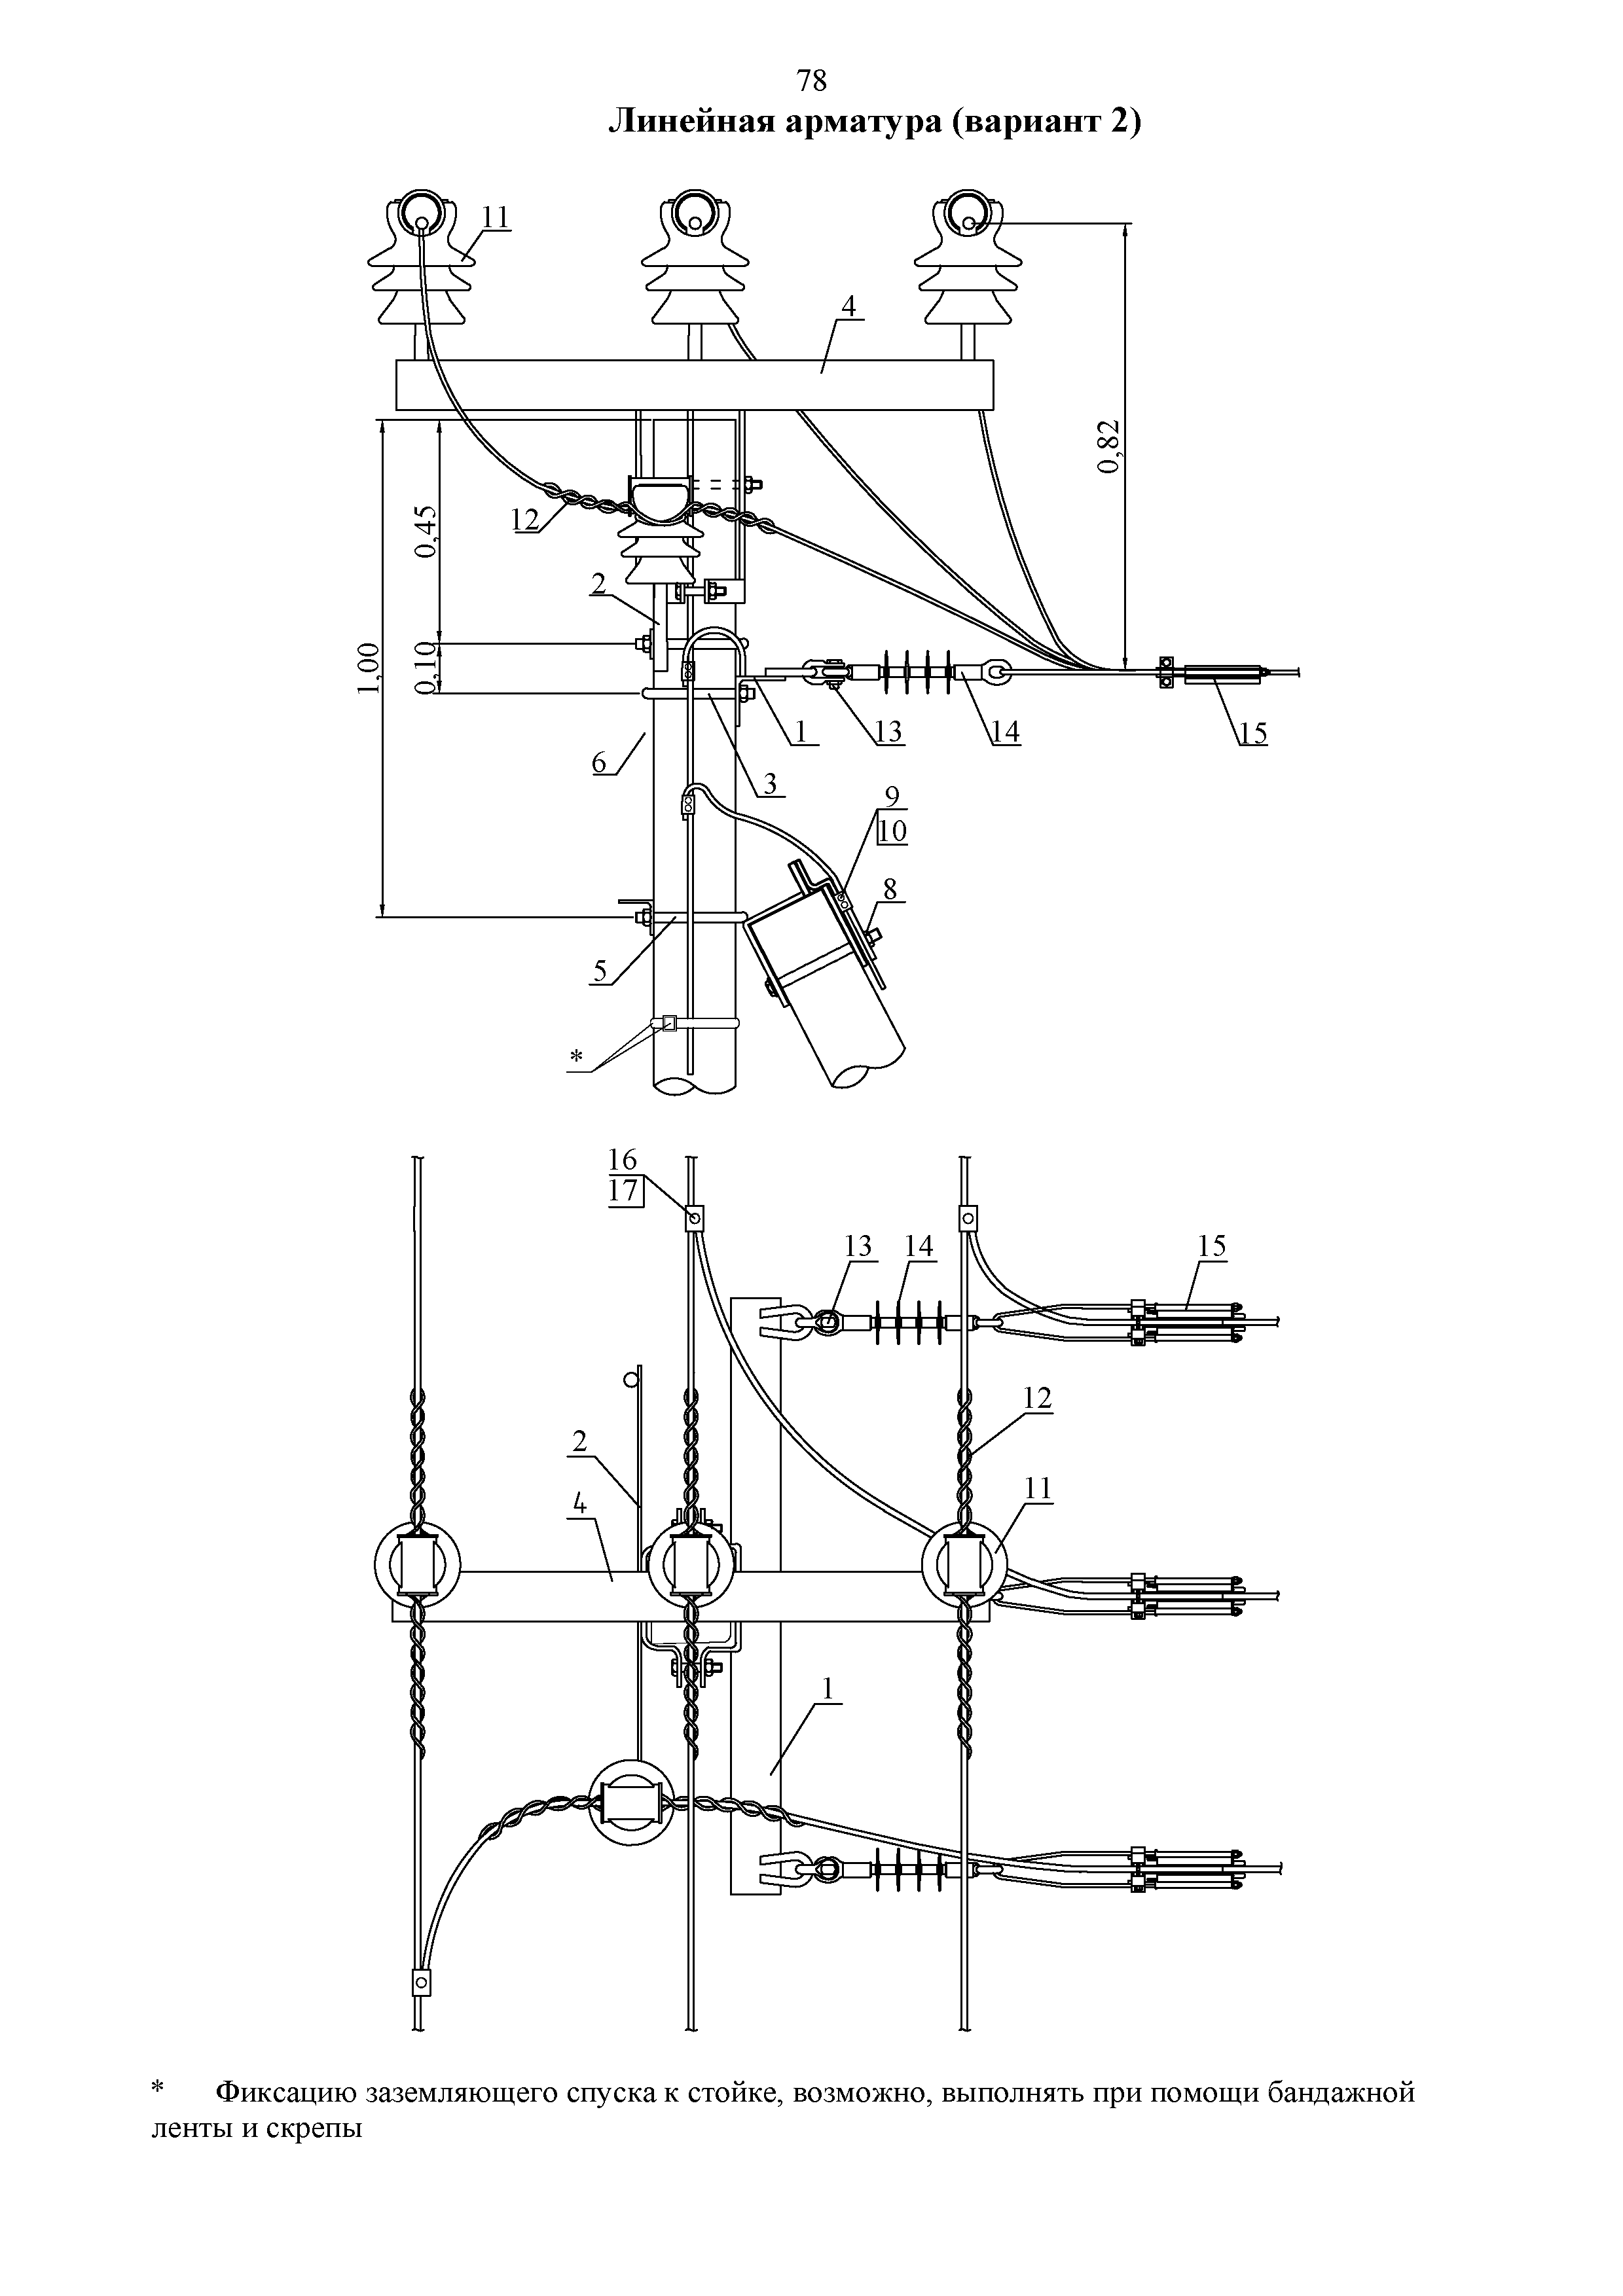 Инструкция по монтажу сип: крепление проводов при прокладке по опорам